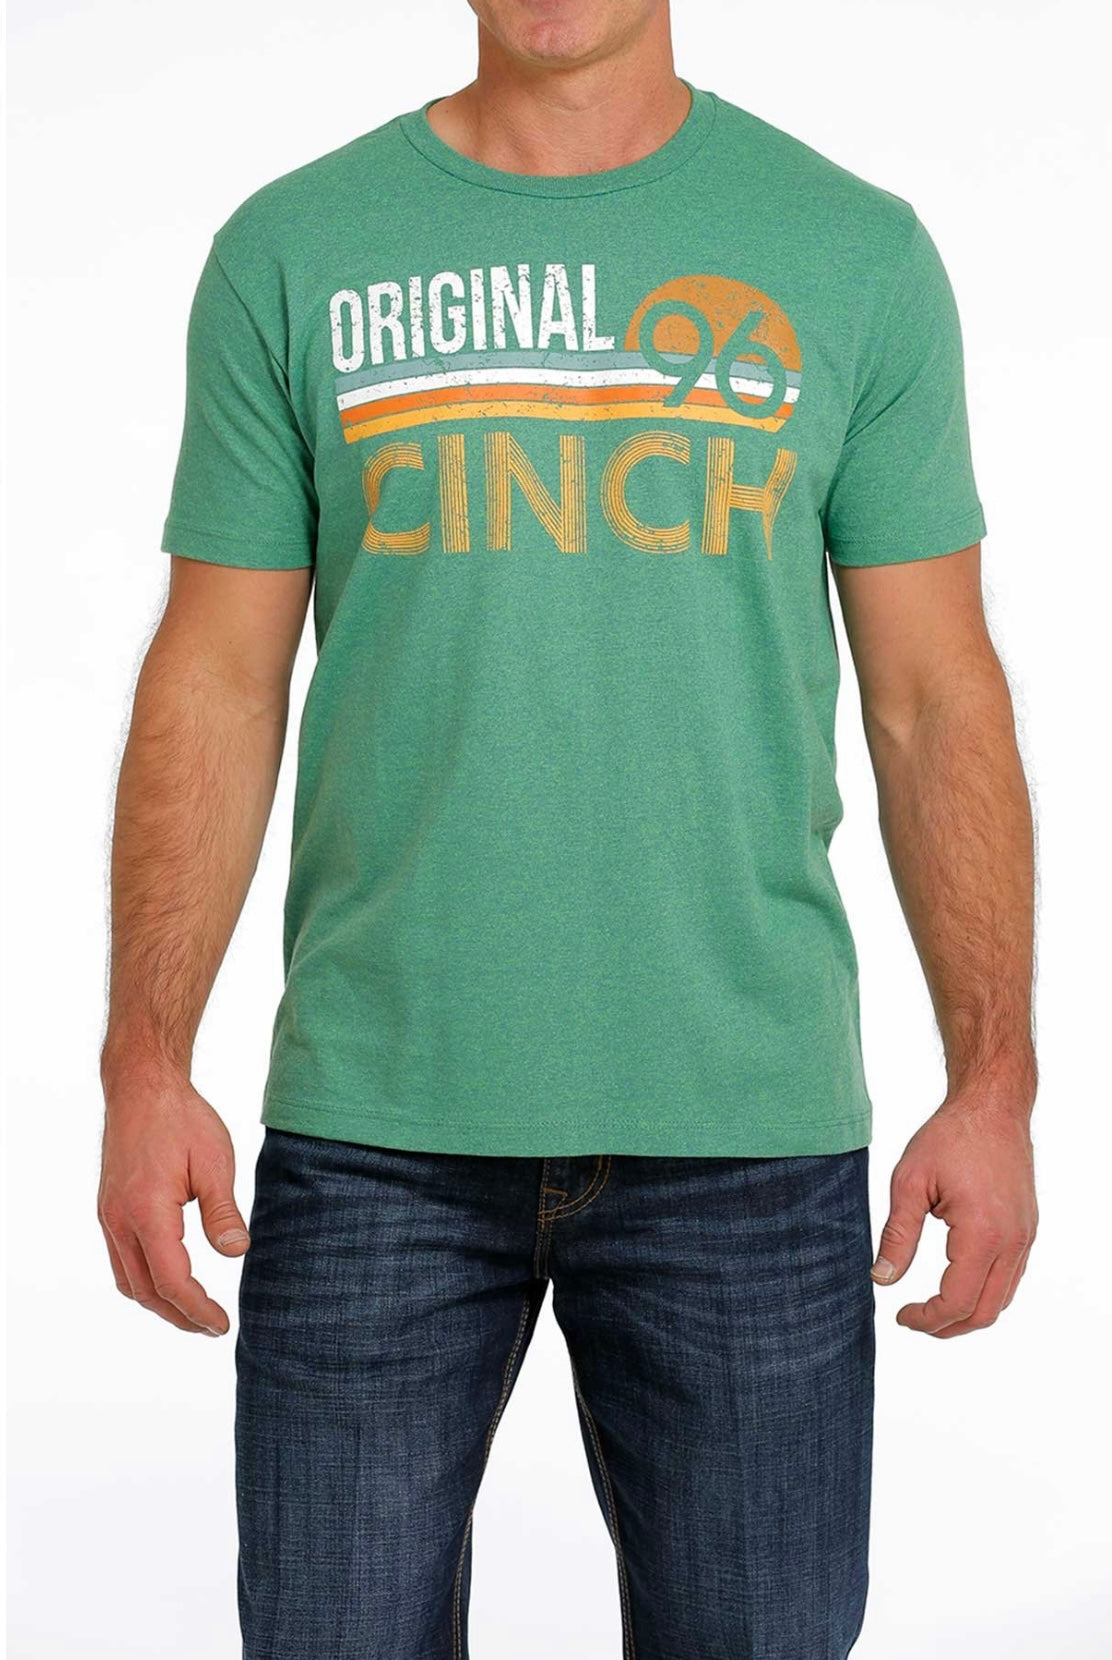 Cinch Mens ‘Original’ Logo T-Shirt